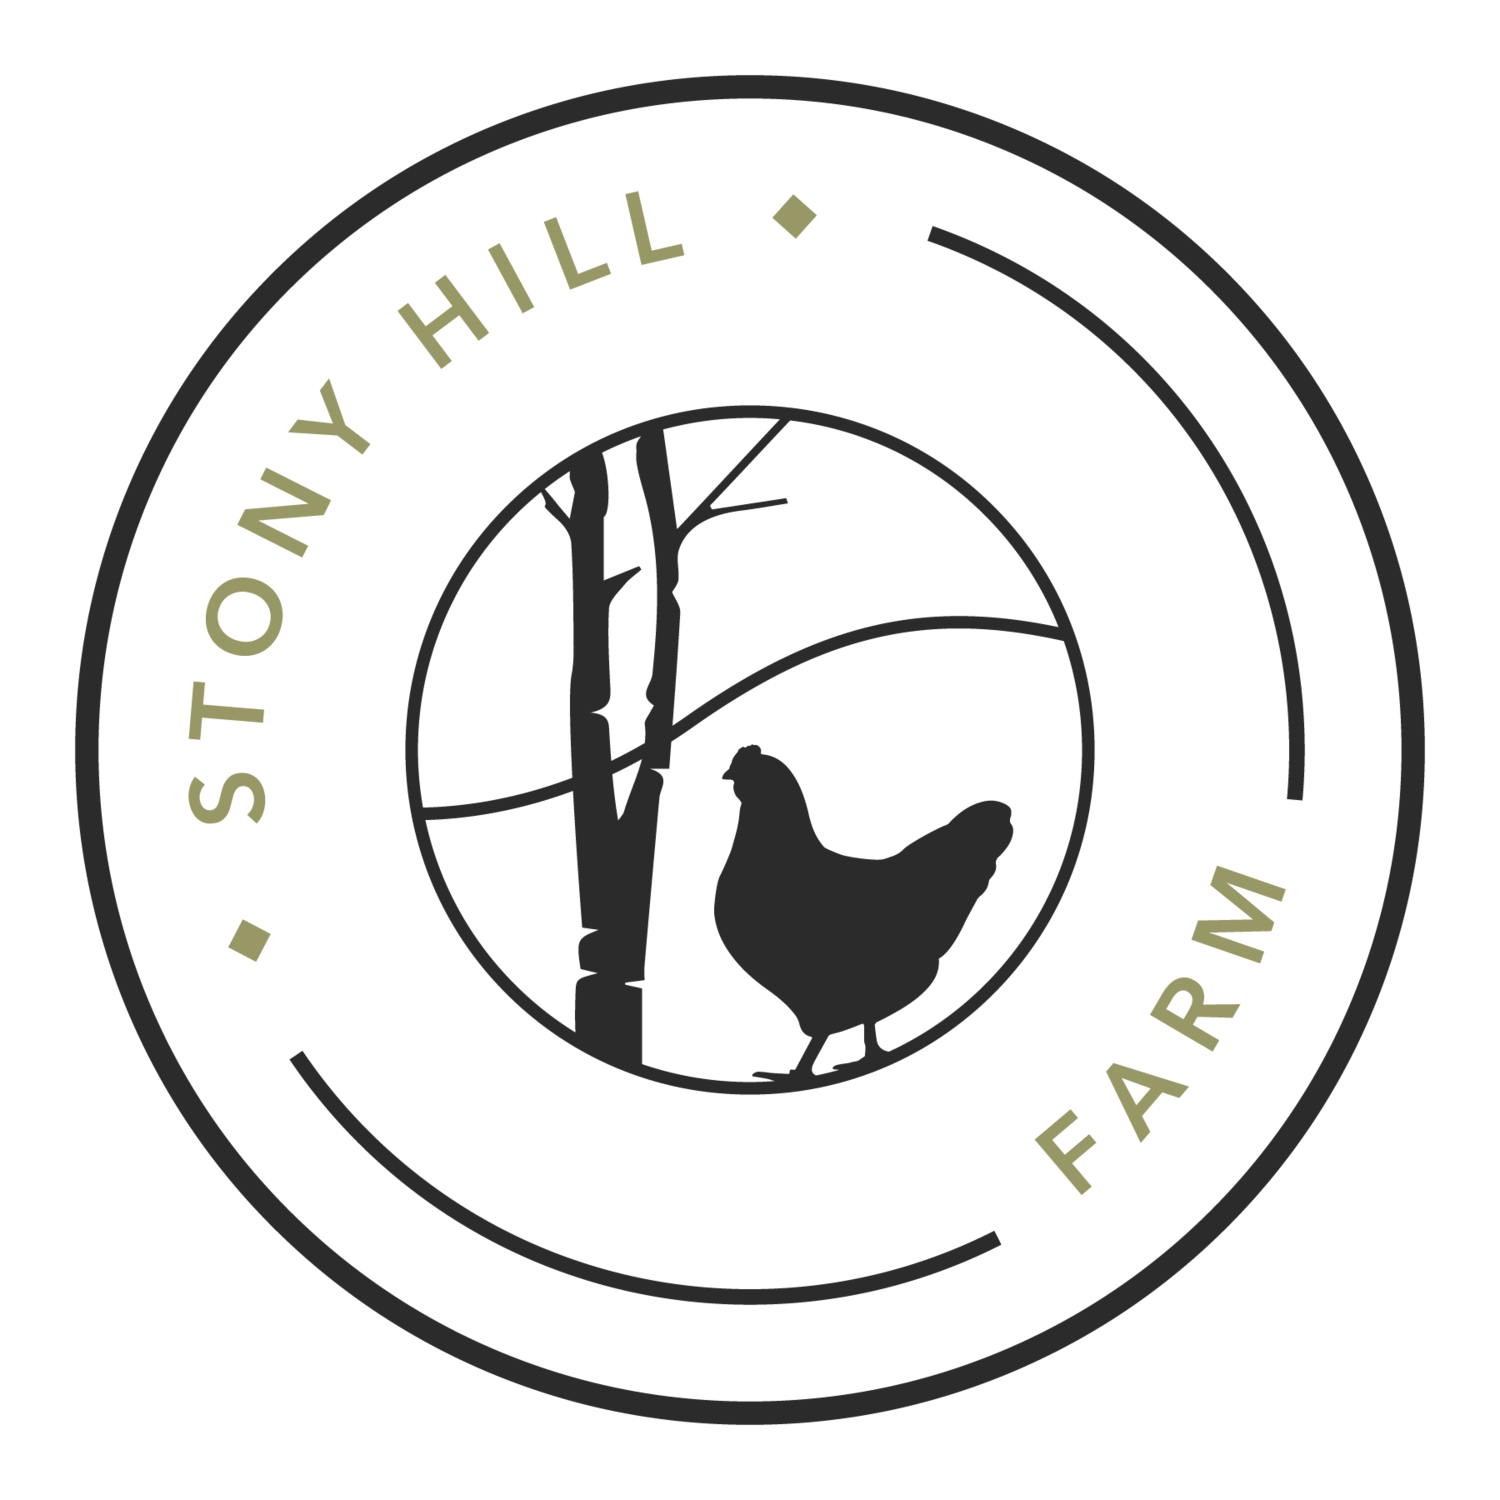 Stony Hill Regenerative Food and Farm